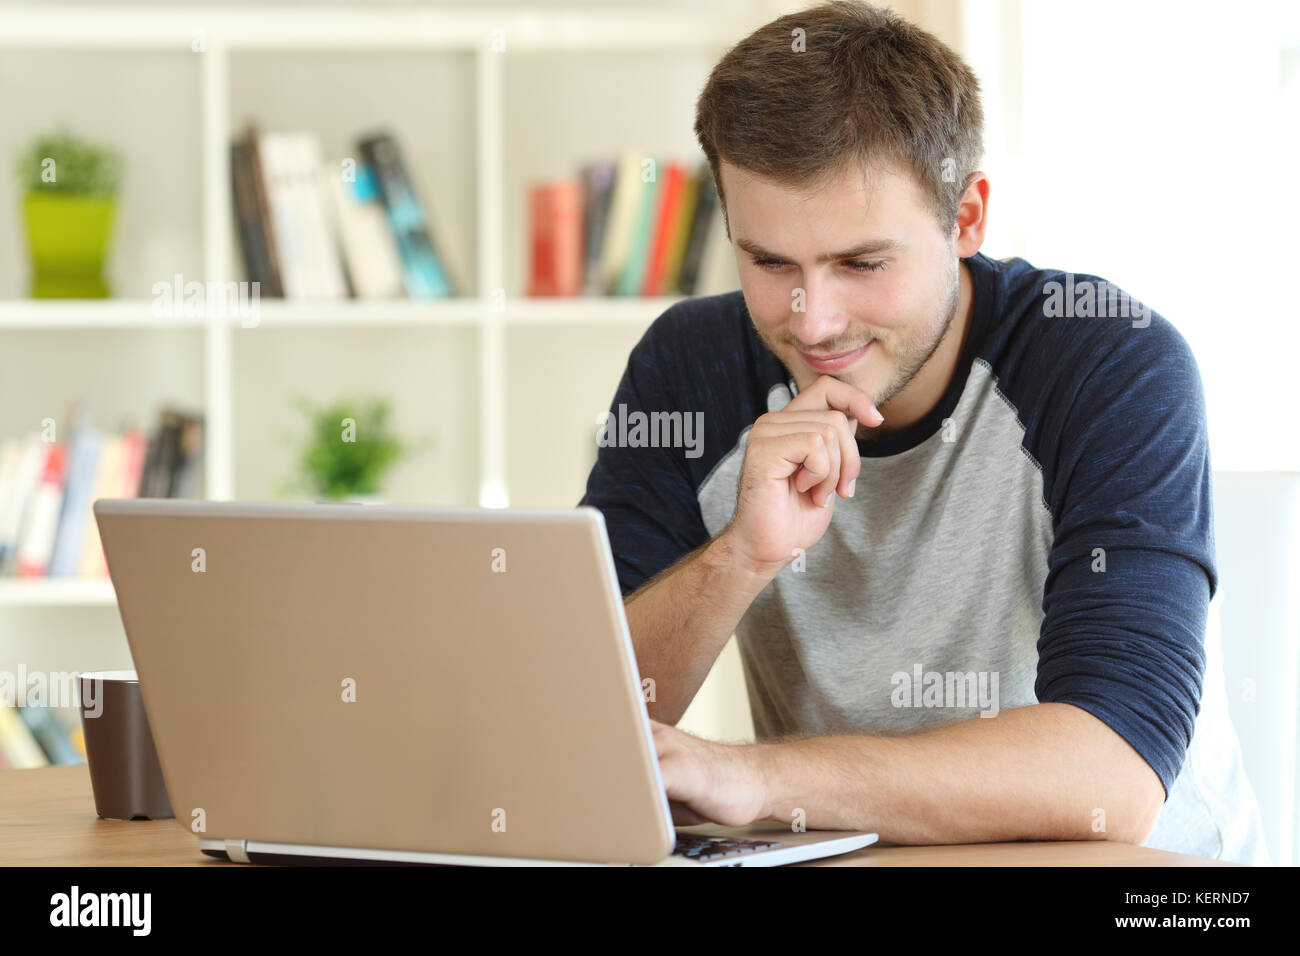 L'homme trouver un contenu intéressant à la ligne dans un ordinateur portable sur une table à la maison Banque D'Images